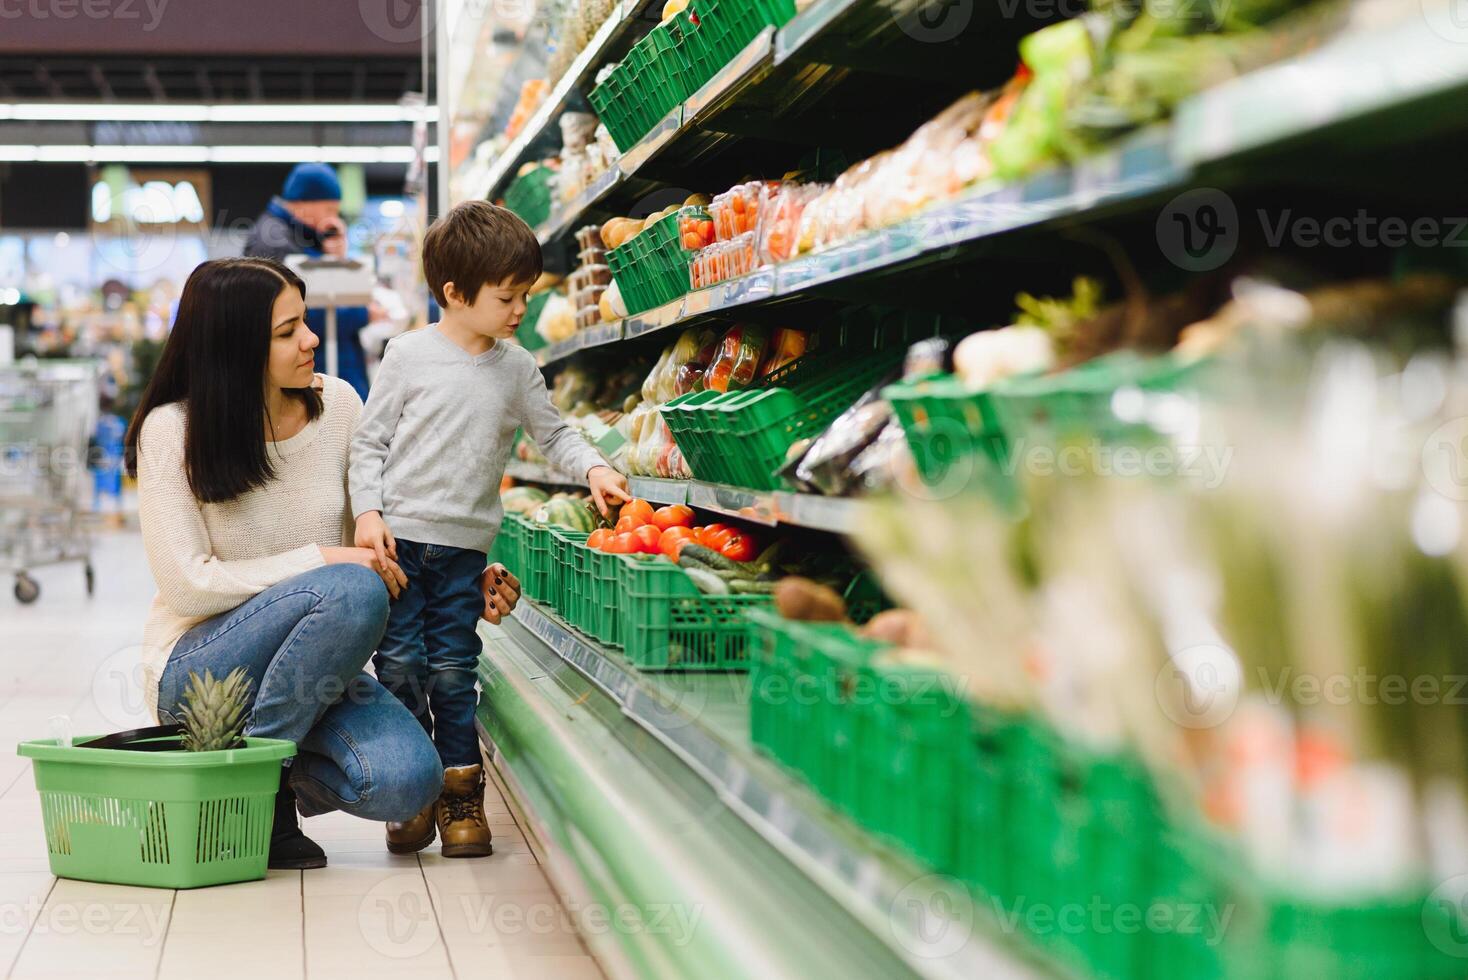 donna e bambino ragazzo durante famiglia shopping con carrello a supermercato foto